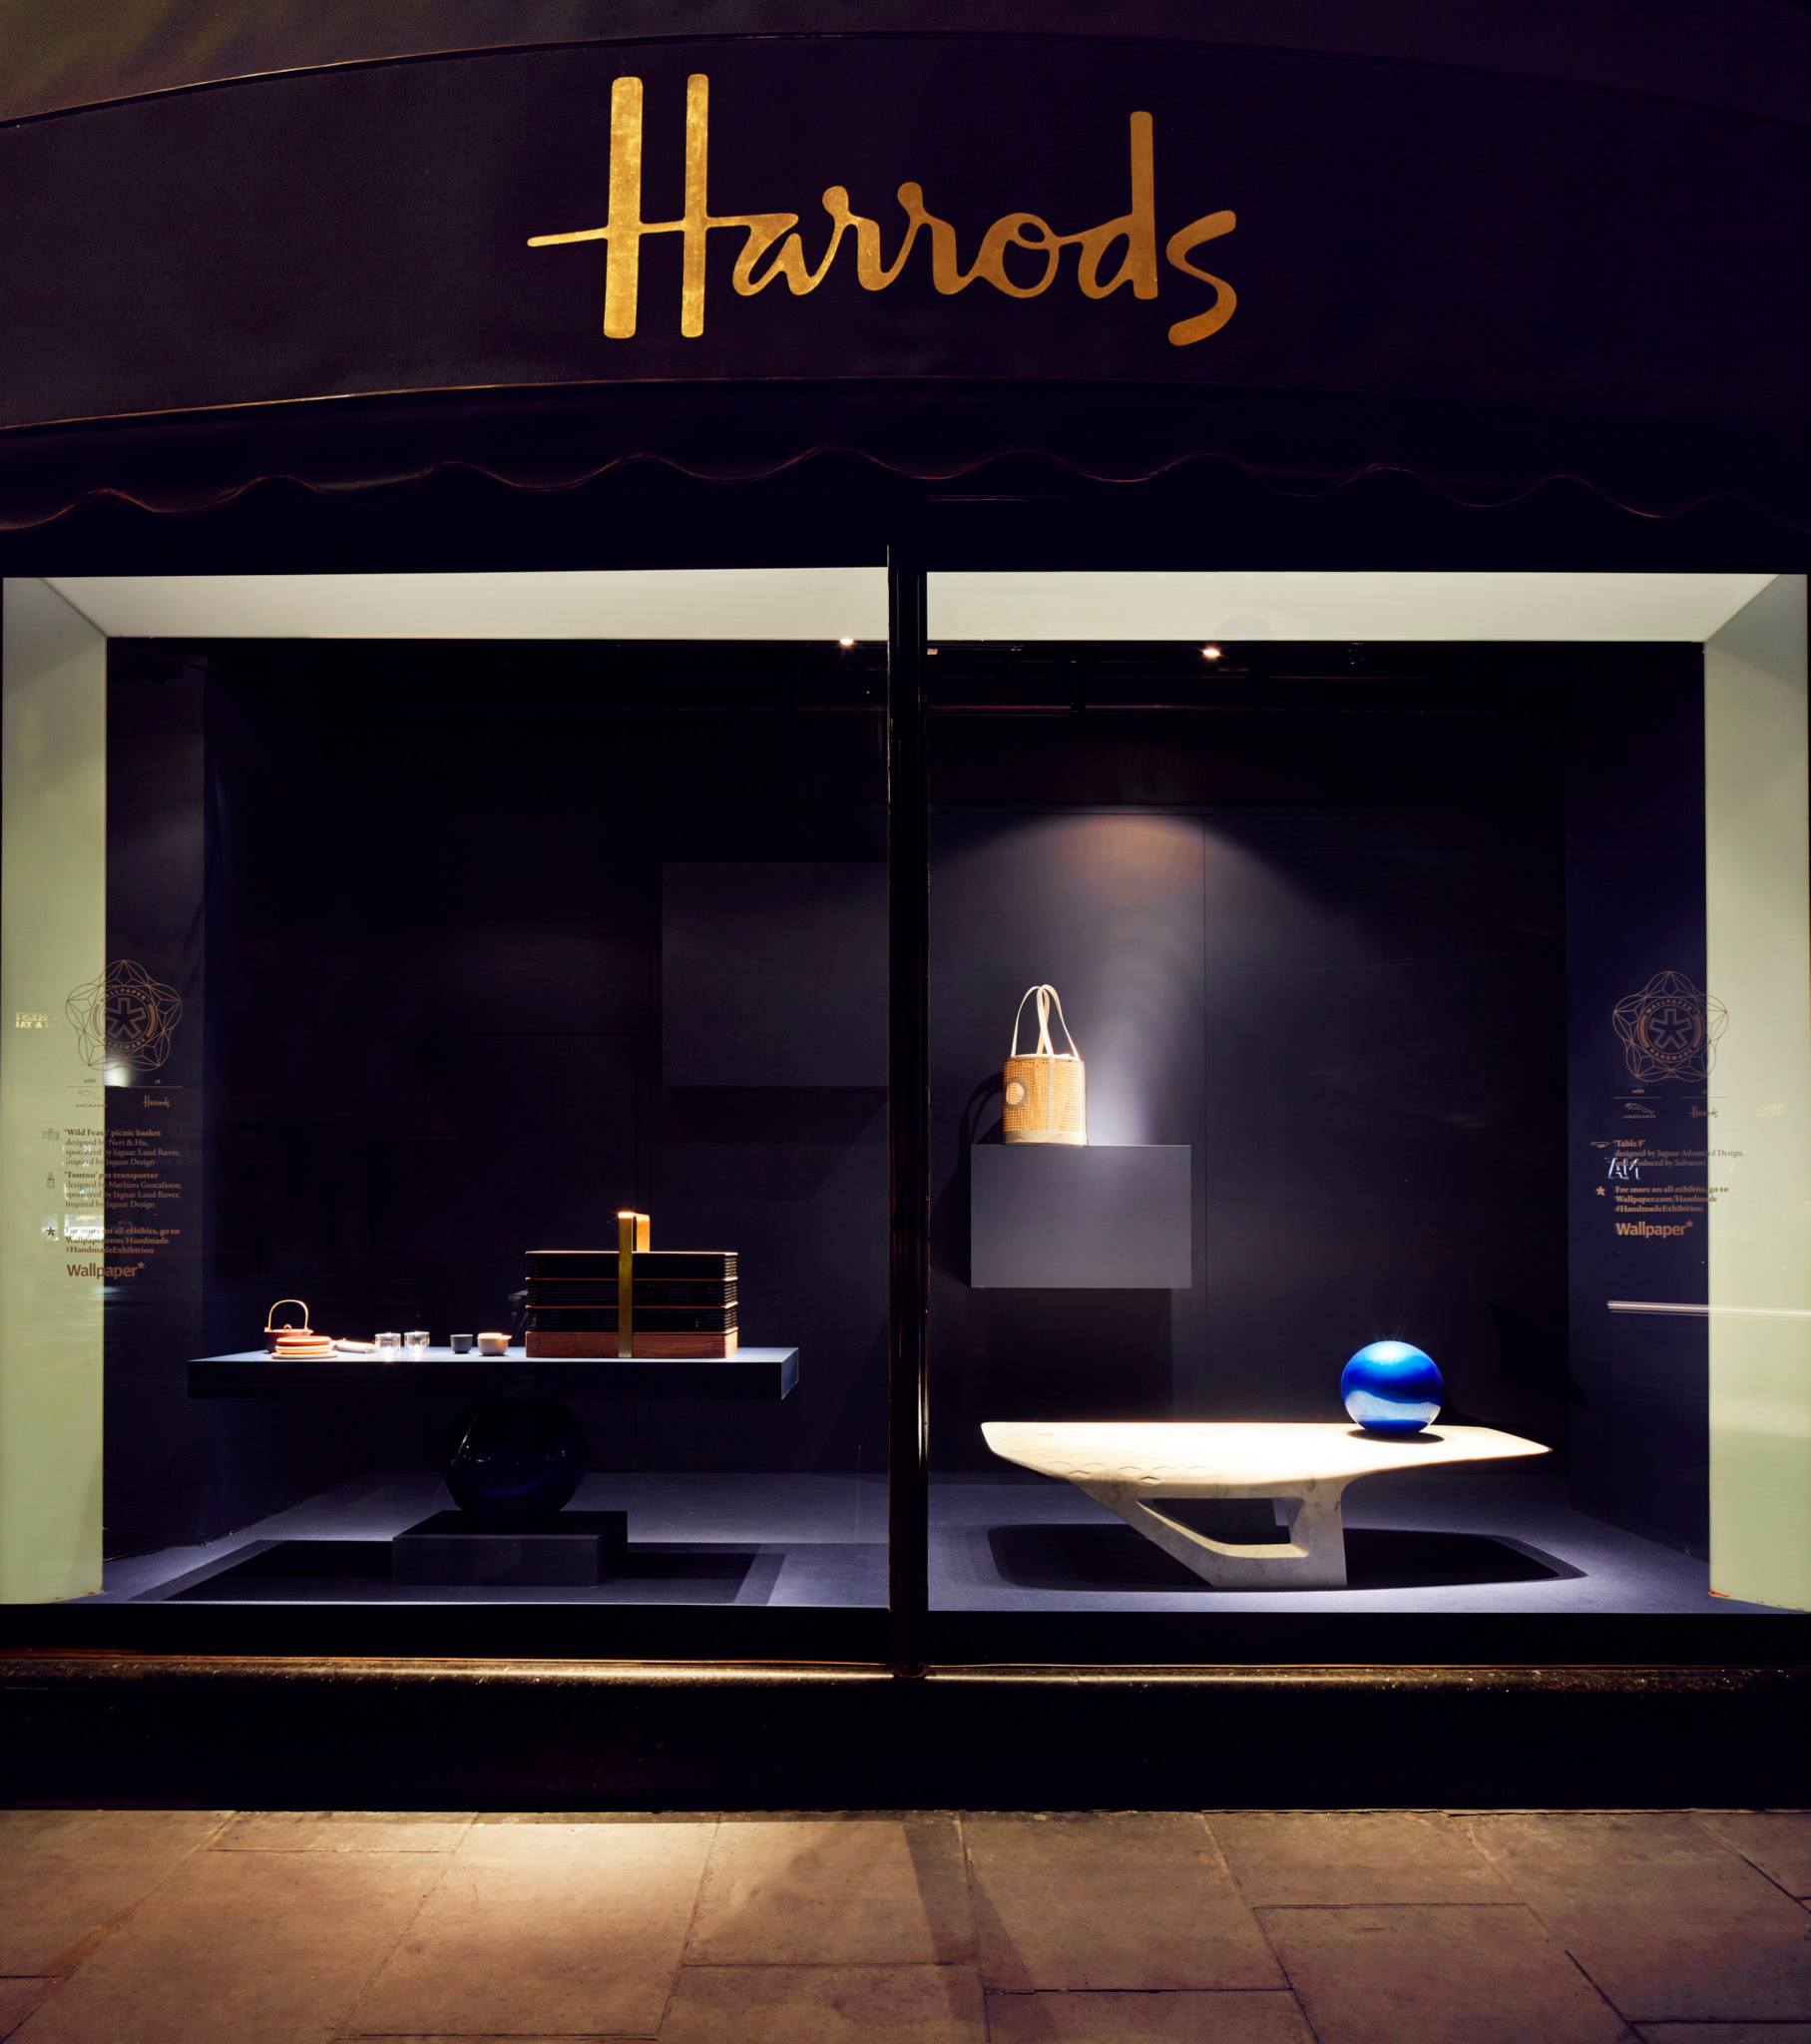 Best Window Displays Harrods 2013 Handmade Exhibition - Harrods London , HD Wallpaper & Backgrounds